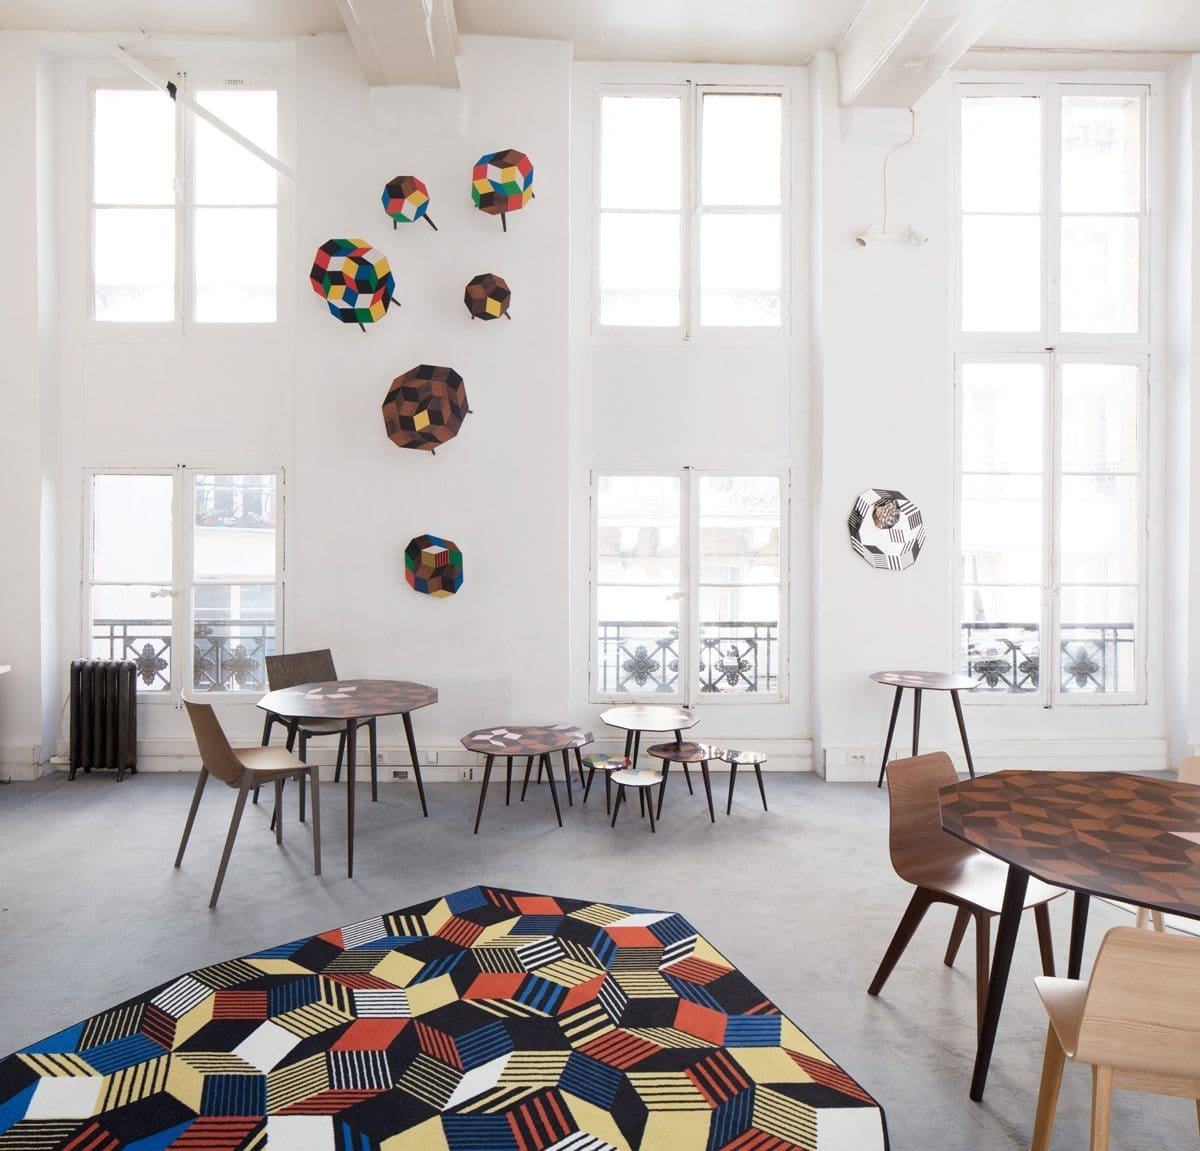 Exposition Penrose Project, Ich&Kar - Bazartherapy, Paris Design Week 2015, tapis, tables basses et guéridon au motifs géométrique